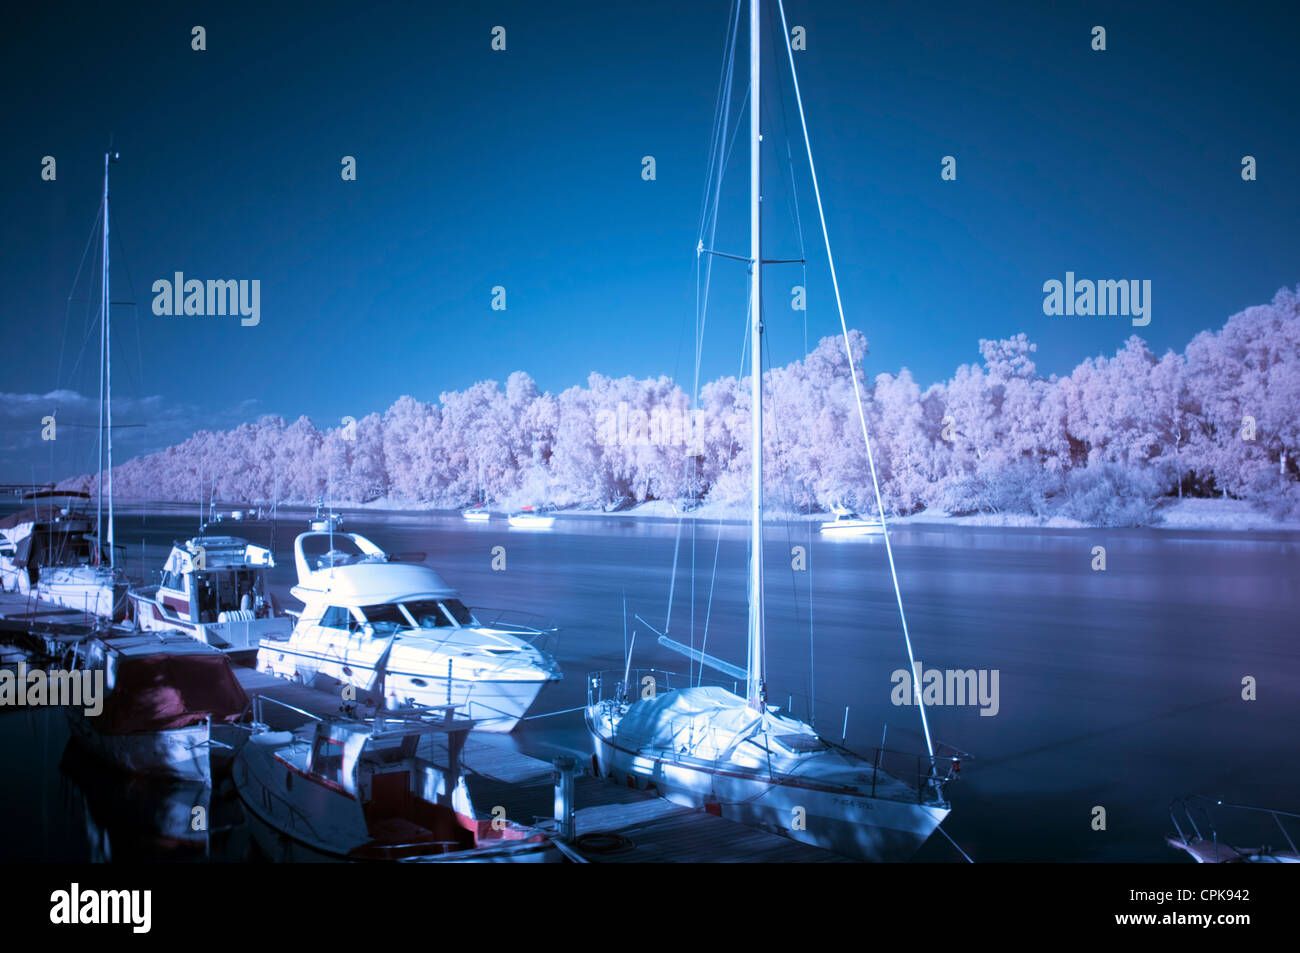 Gelves fotografías e imágenes de alta resolución - Alamy